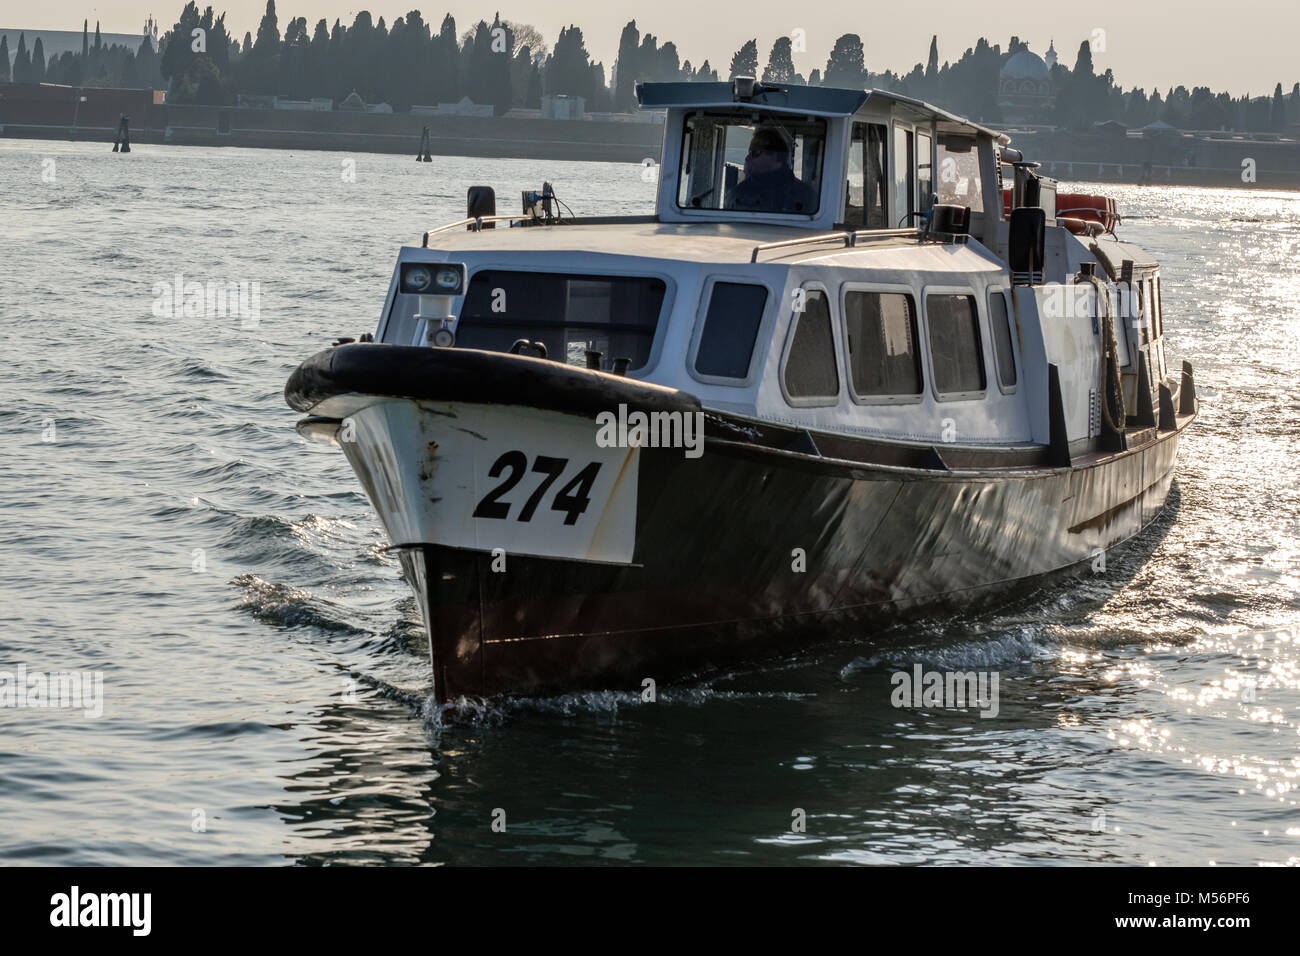 Venetian public transport boat. Venice, Italy. February 11, 2018. Stock Photo